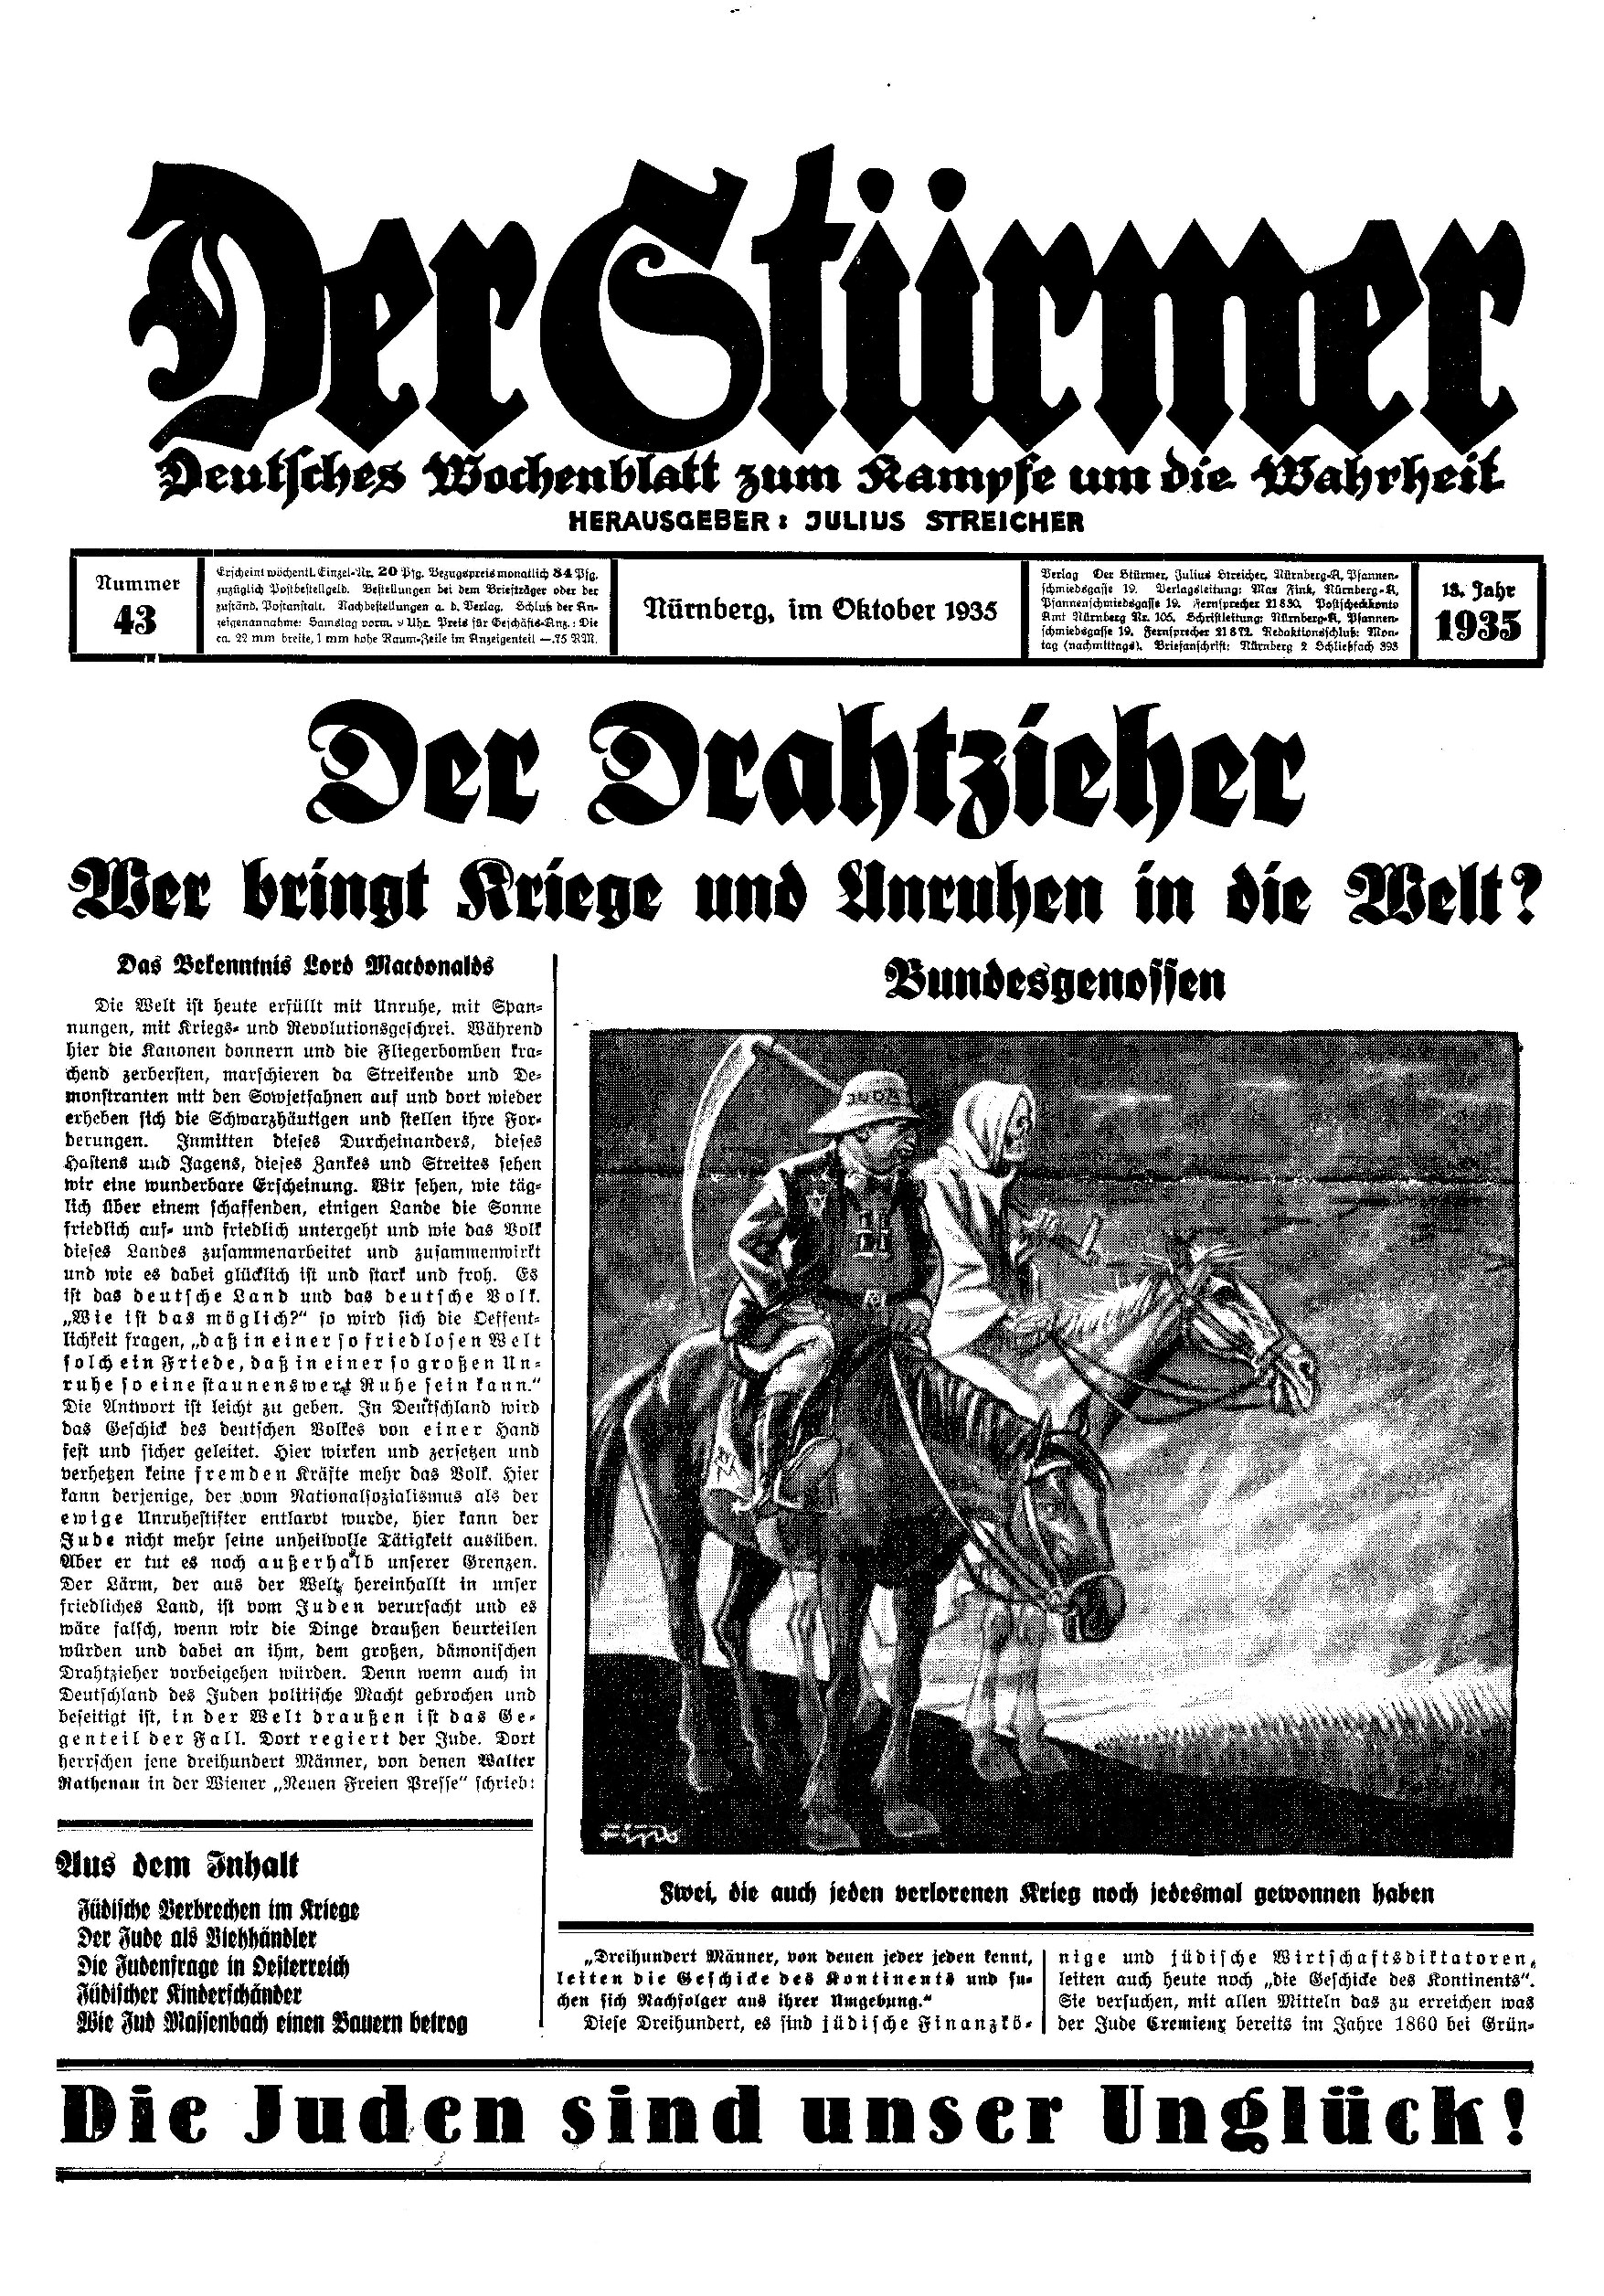 Der Stürmer - 1935 Nr. 43 (12 S., Scan, Fraktur)